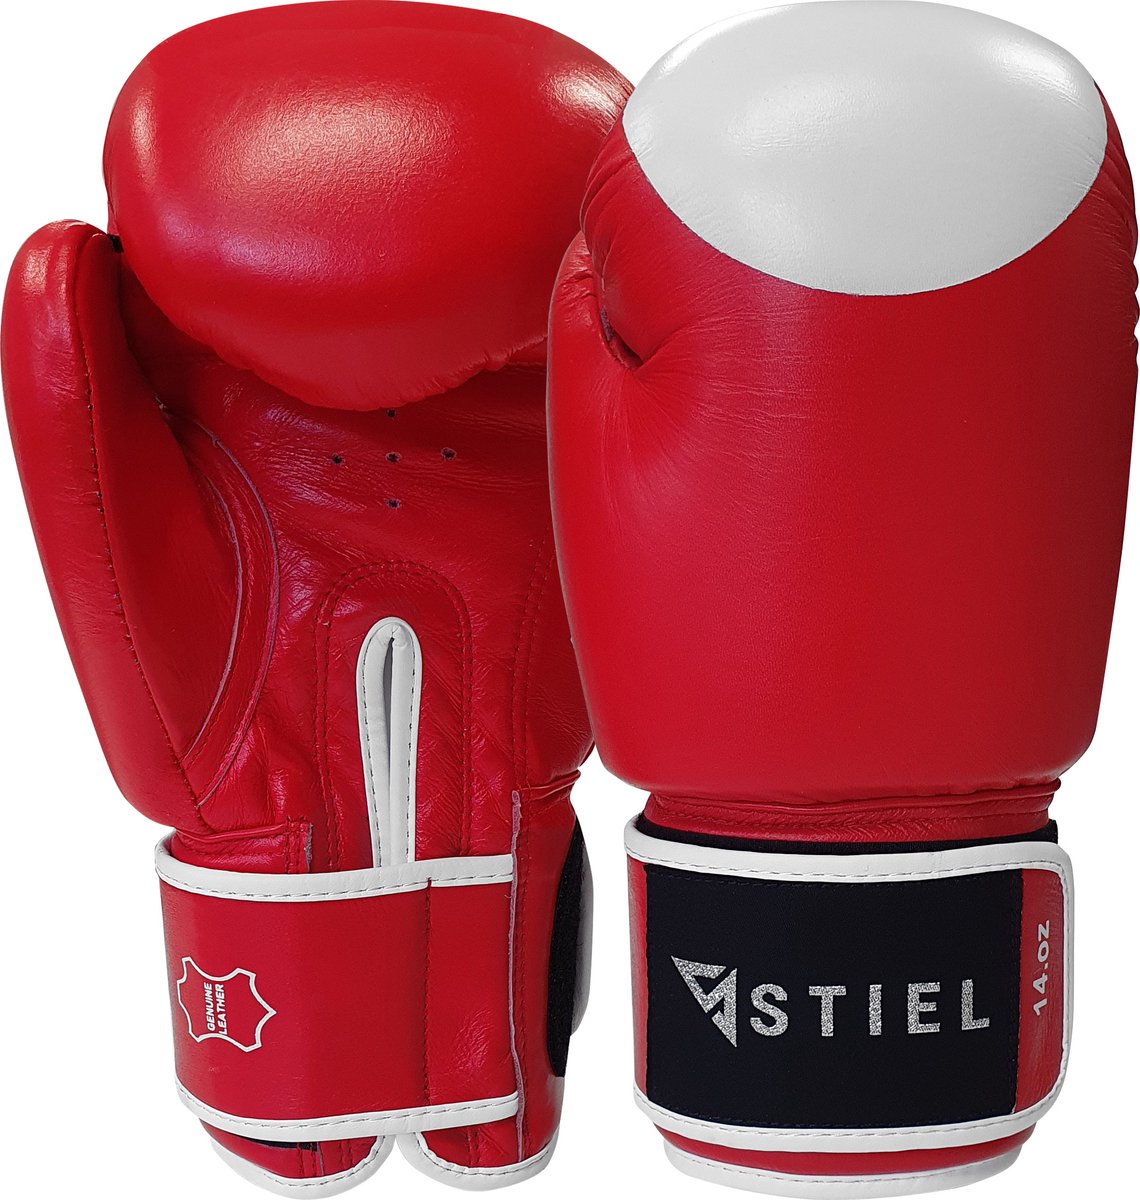 Stiel Pro Boxing Bokshandschoenen - met target - Rood - 14 oz.